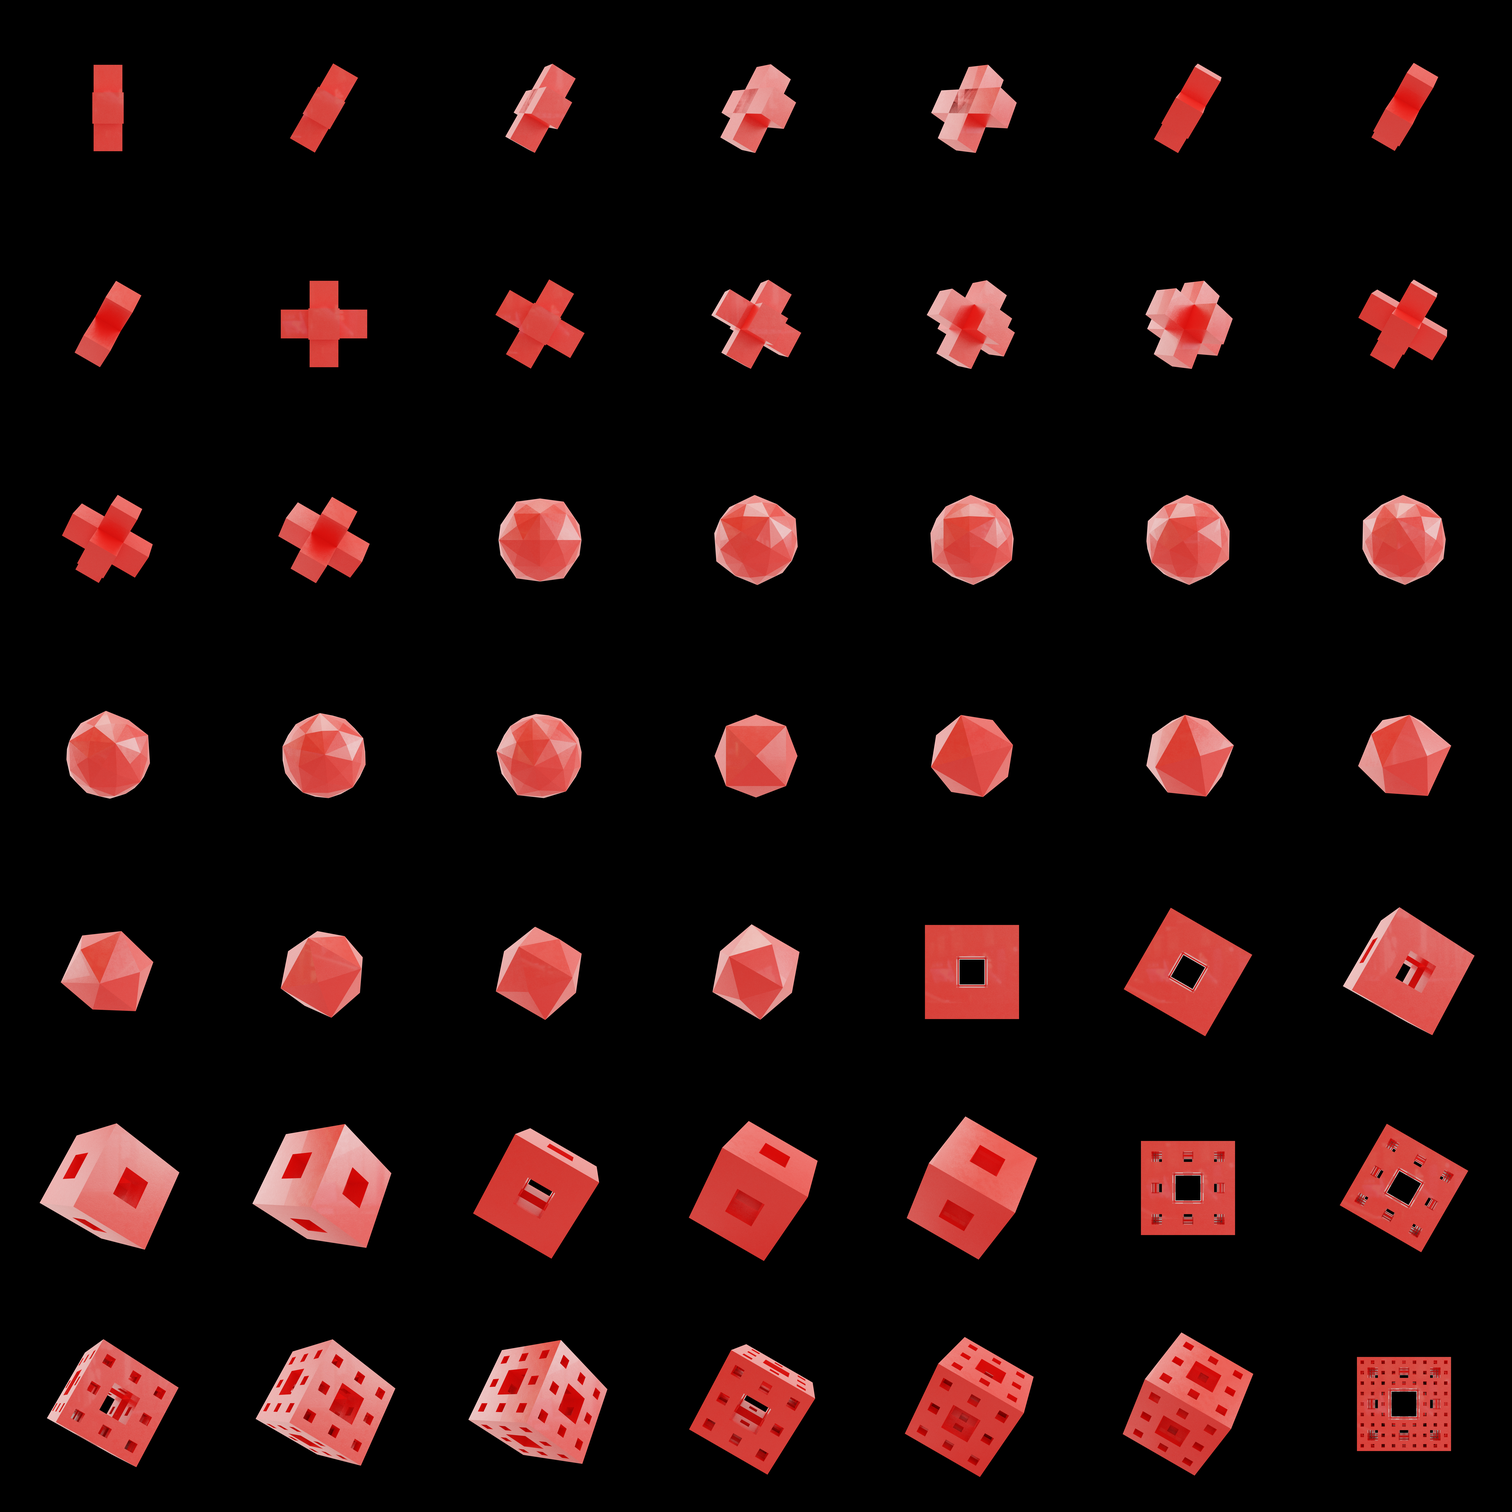 The Bundle - cmp.plastic/b tile image 1